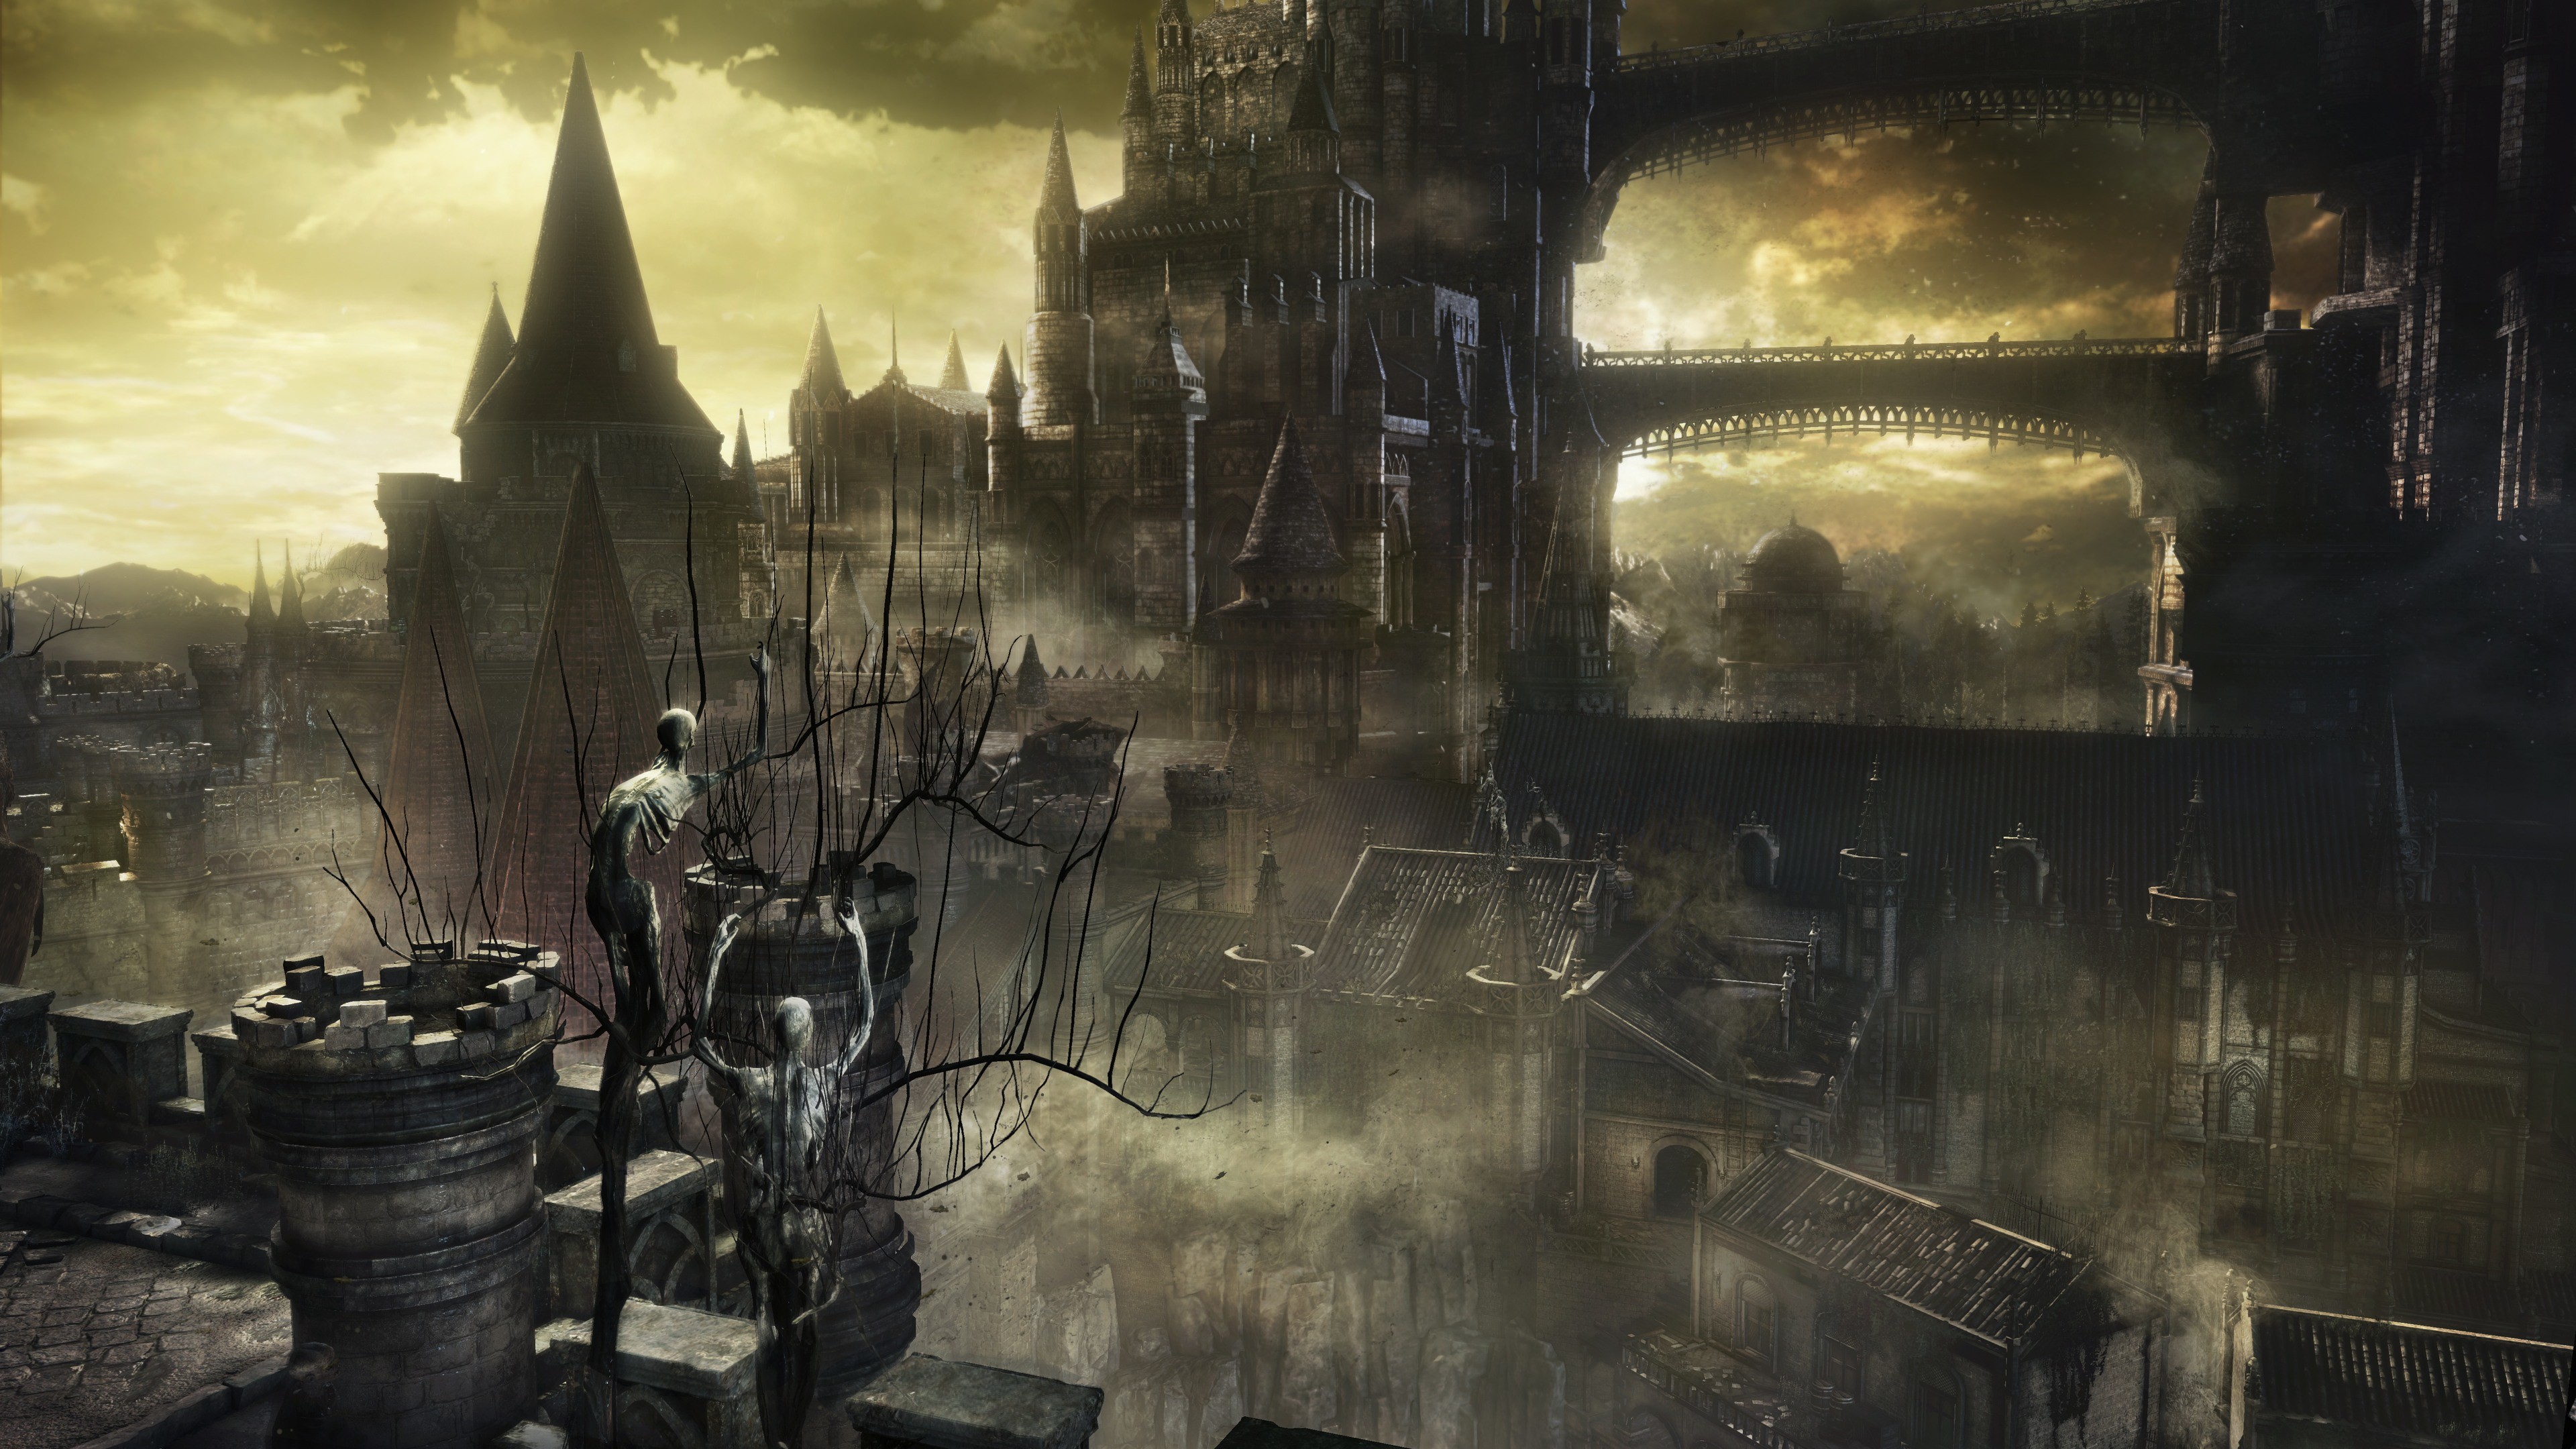 3840x2160 Dark Souls III 4k Ultra HD Wallpaper | Hintergrund |  | ID:600917  - Wallpaper Abyss